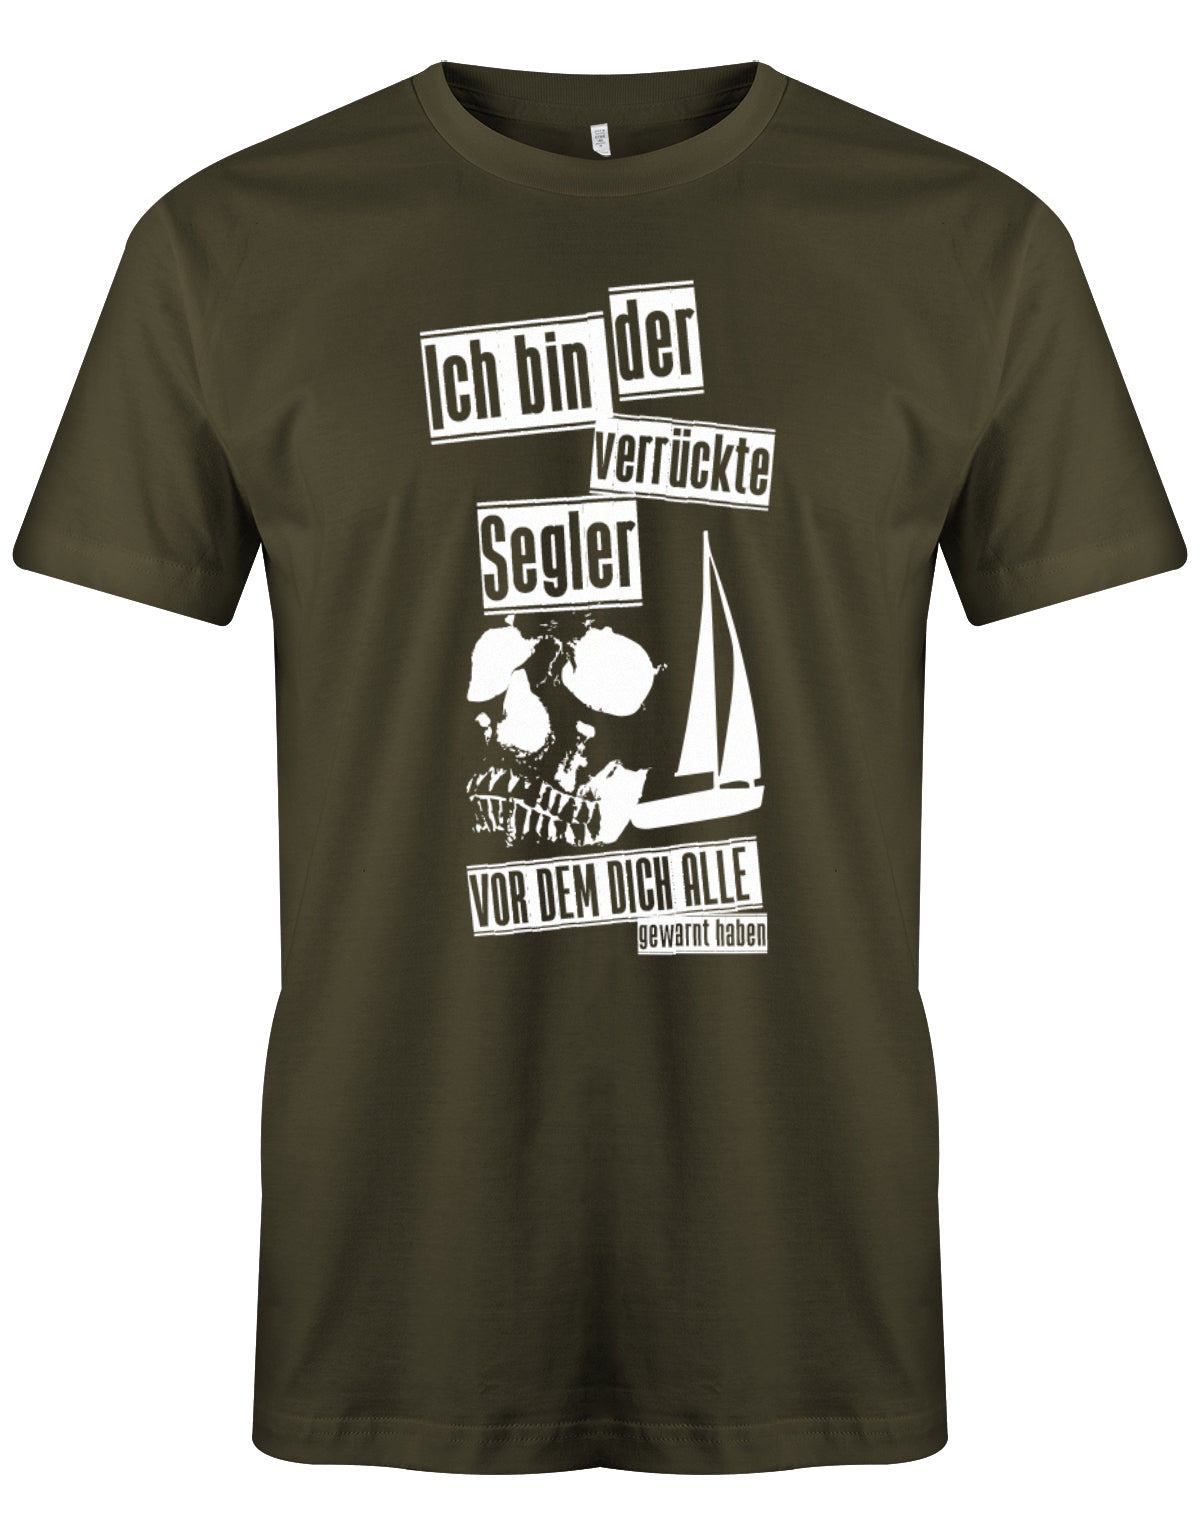 Das Segler t-shirt bedruckt mit "Ich bin der verrückte Segler vor dem dich alle gewarnt haben". Army